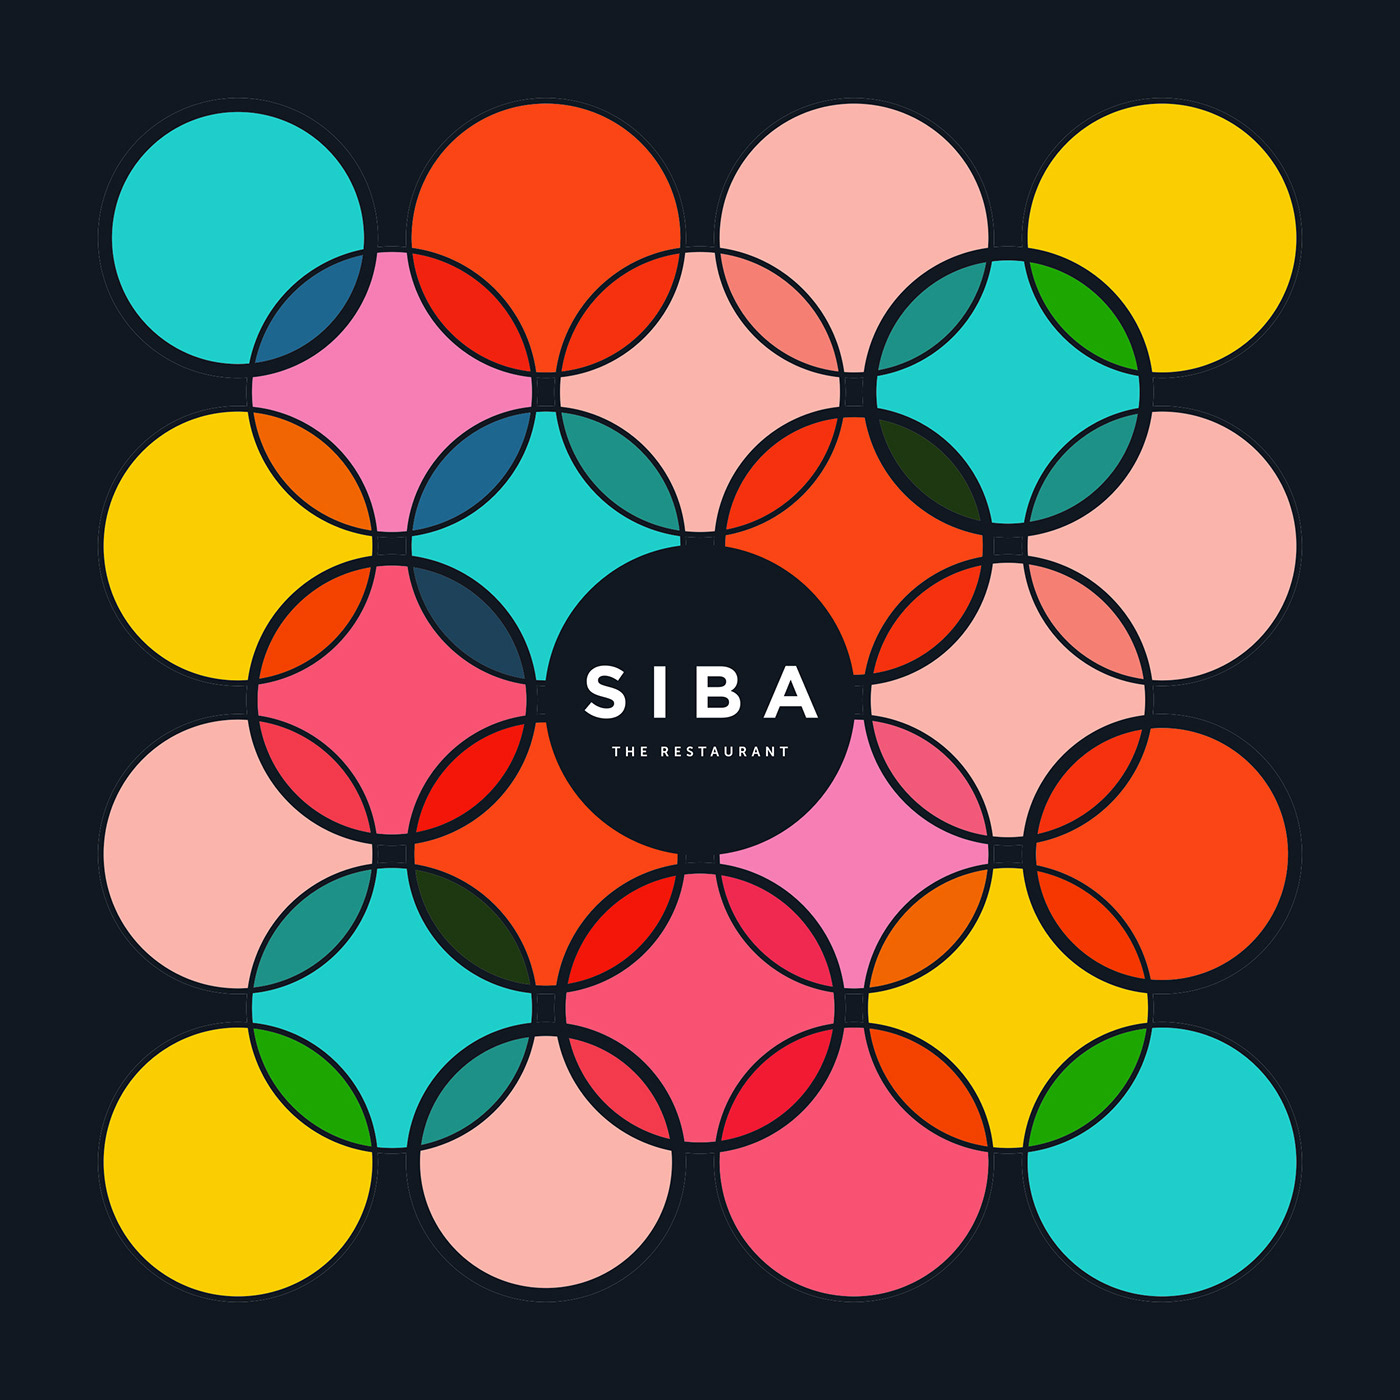 siba redt brand identity restaurant logo Brand Design logo visual identity